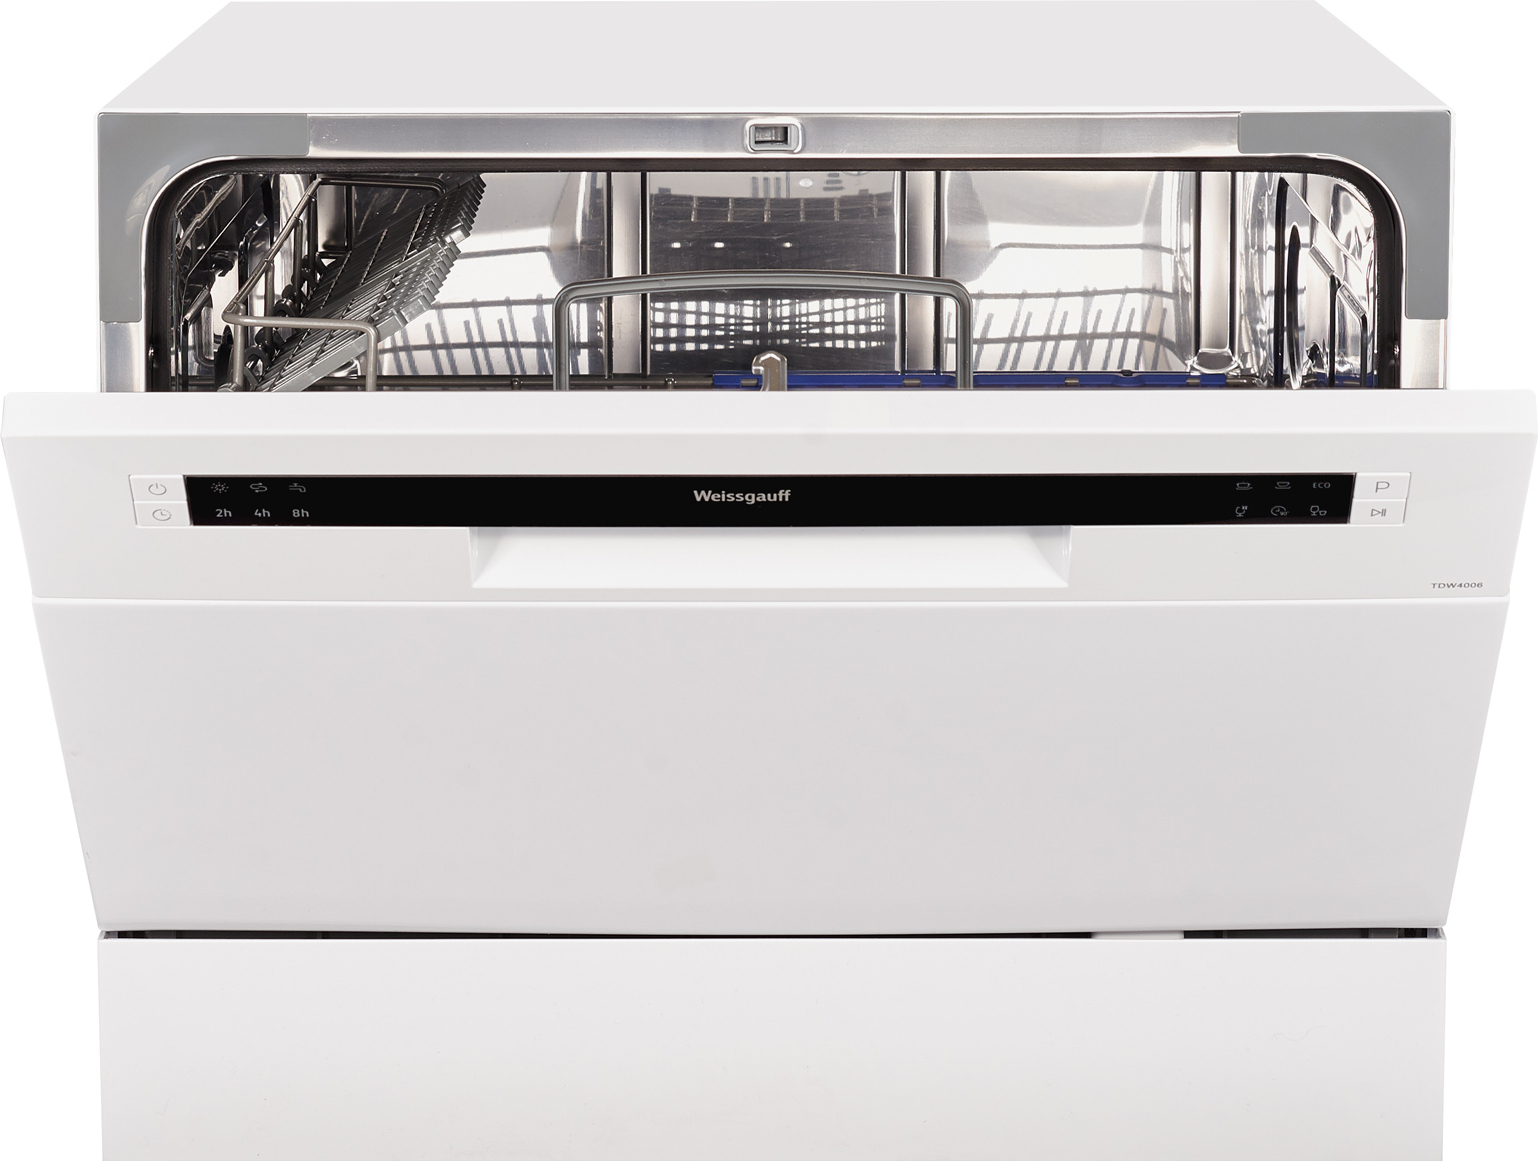 Посудомоечная машина электронная. Посудомоечная машина Weissgauff TDW 4017 D. Посудомоечная машина Weissgauff TDW 4006 V. Посудомоечная машина (компактная) Weissgauff TDW 4006. Посудомоечная машина (компактная) Weissgauff TDW 4017 D.